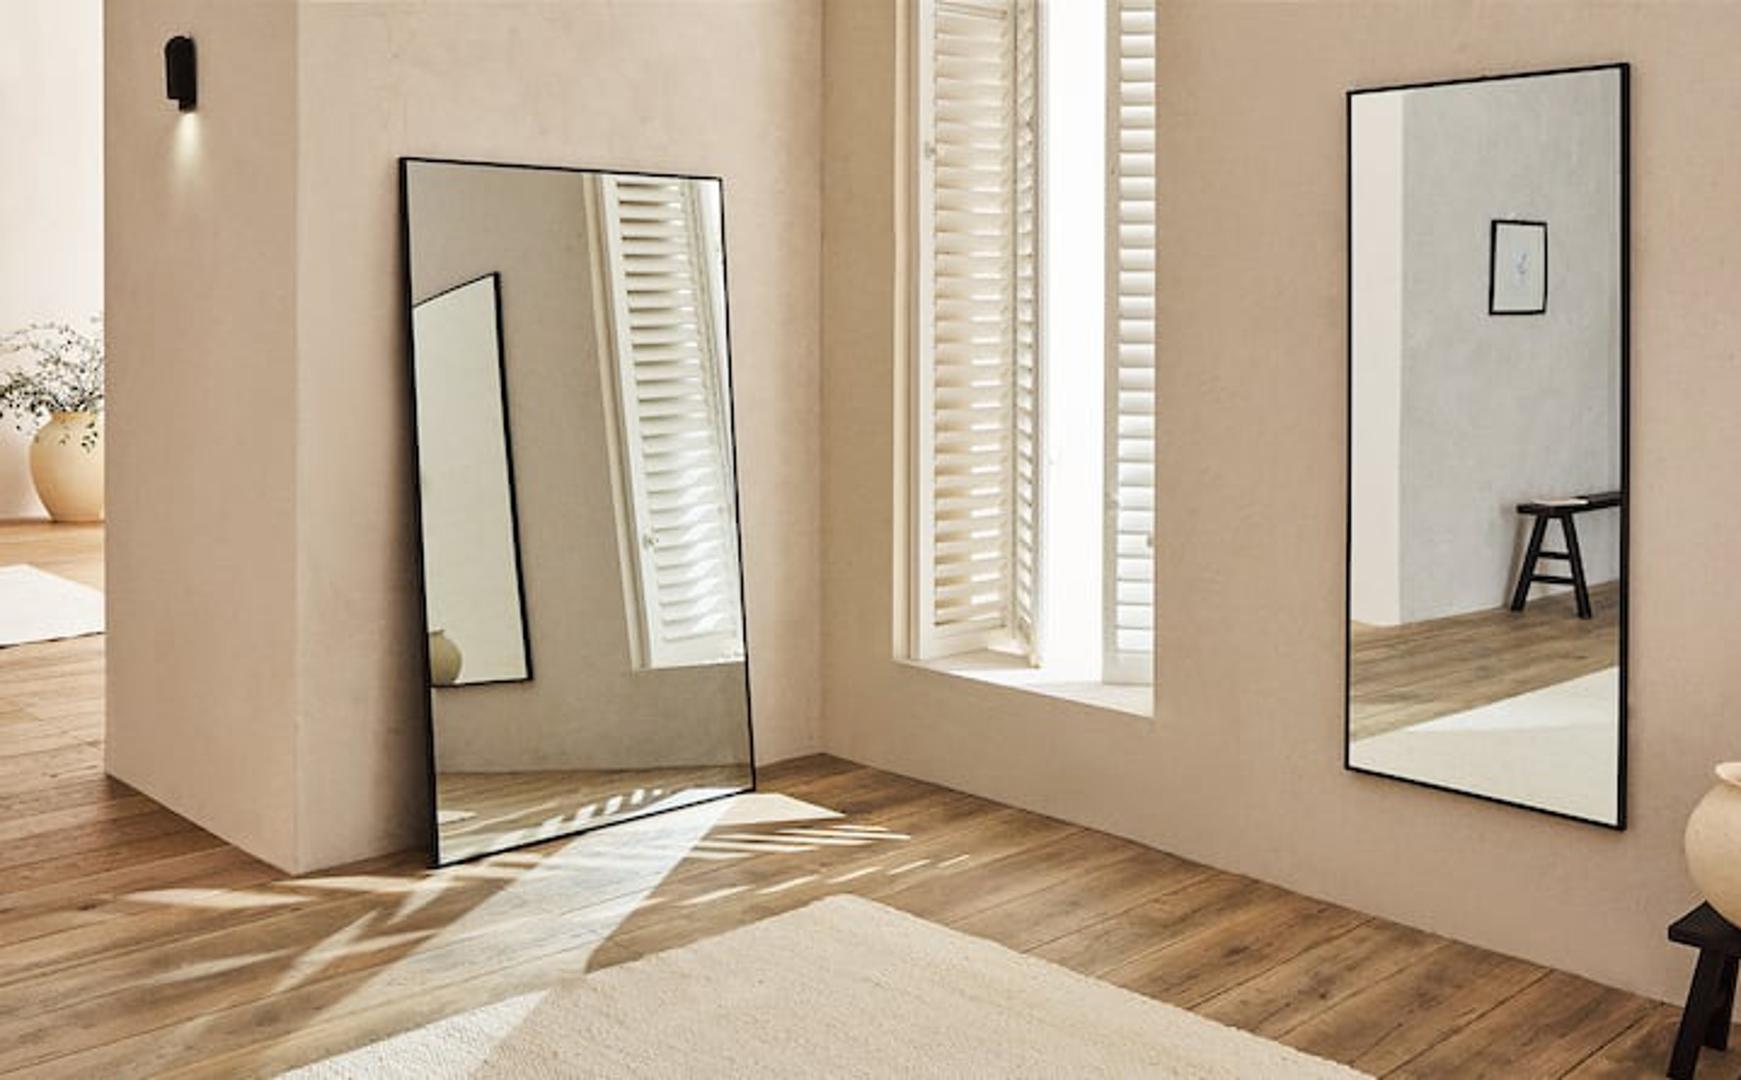 Vizualno povećajte prostor strateški raspoređenim velikim ogledalima